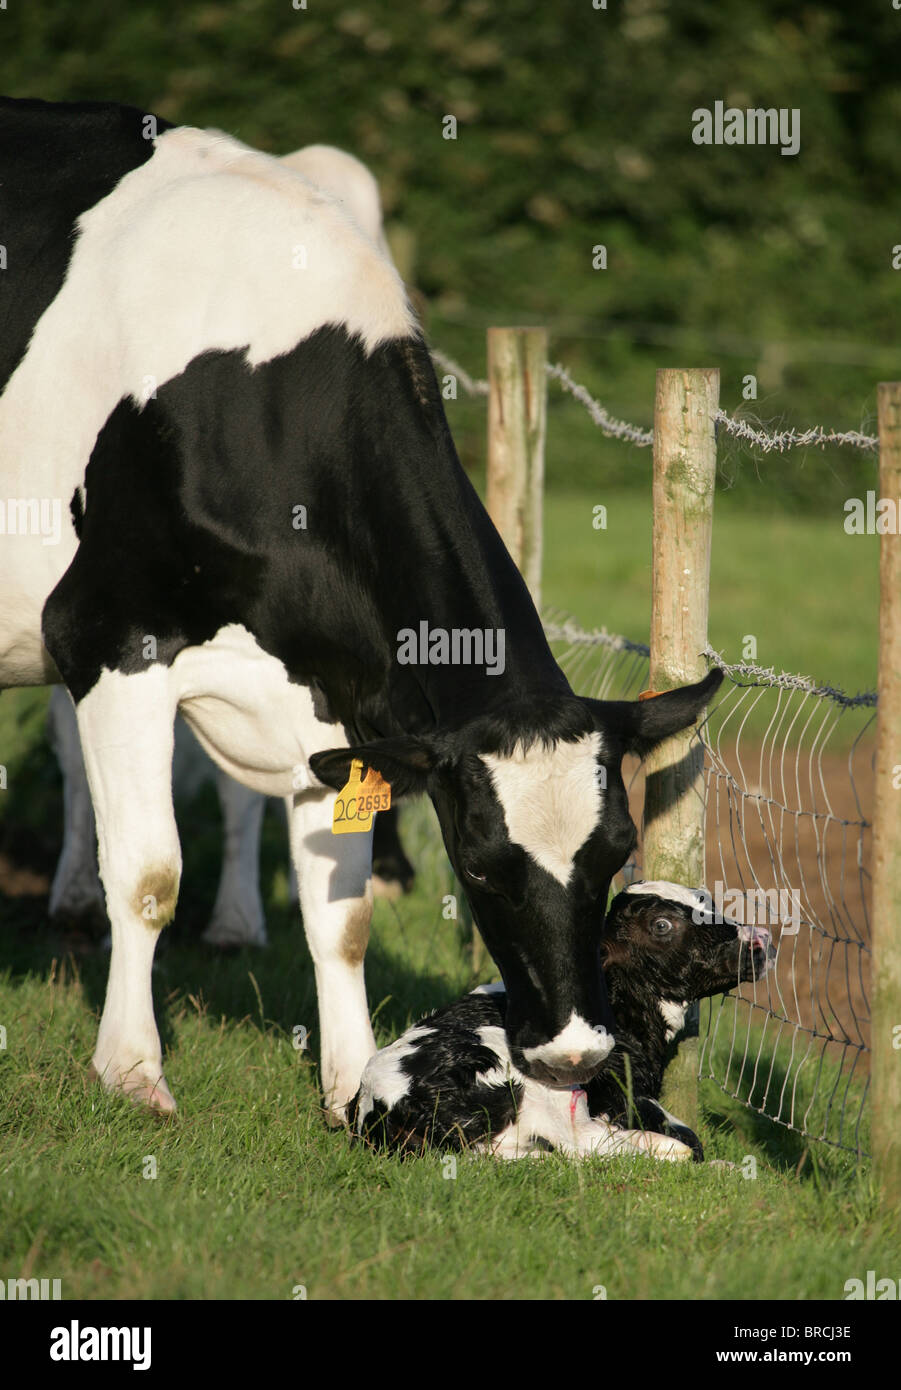 Les bovins laitiers seule femelle adulte avec new born calf Dorset, UK Banque D'Images